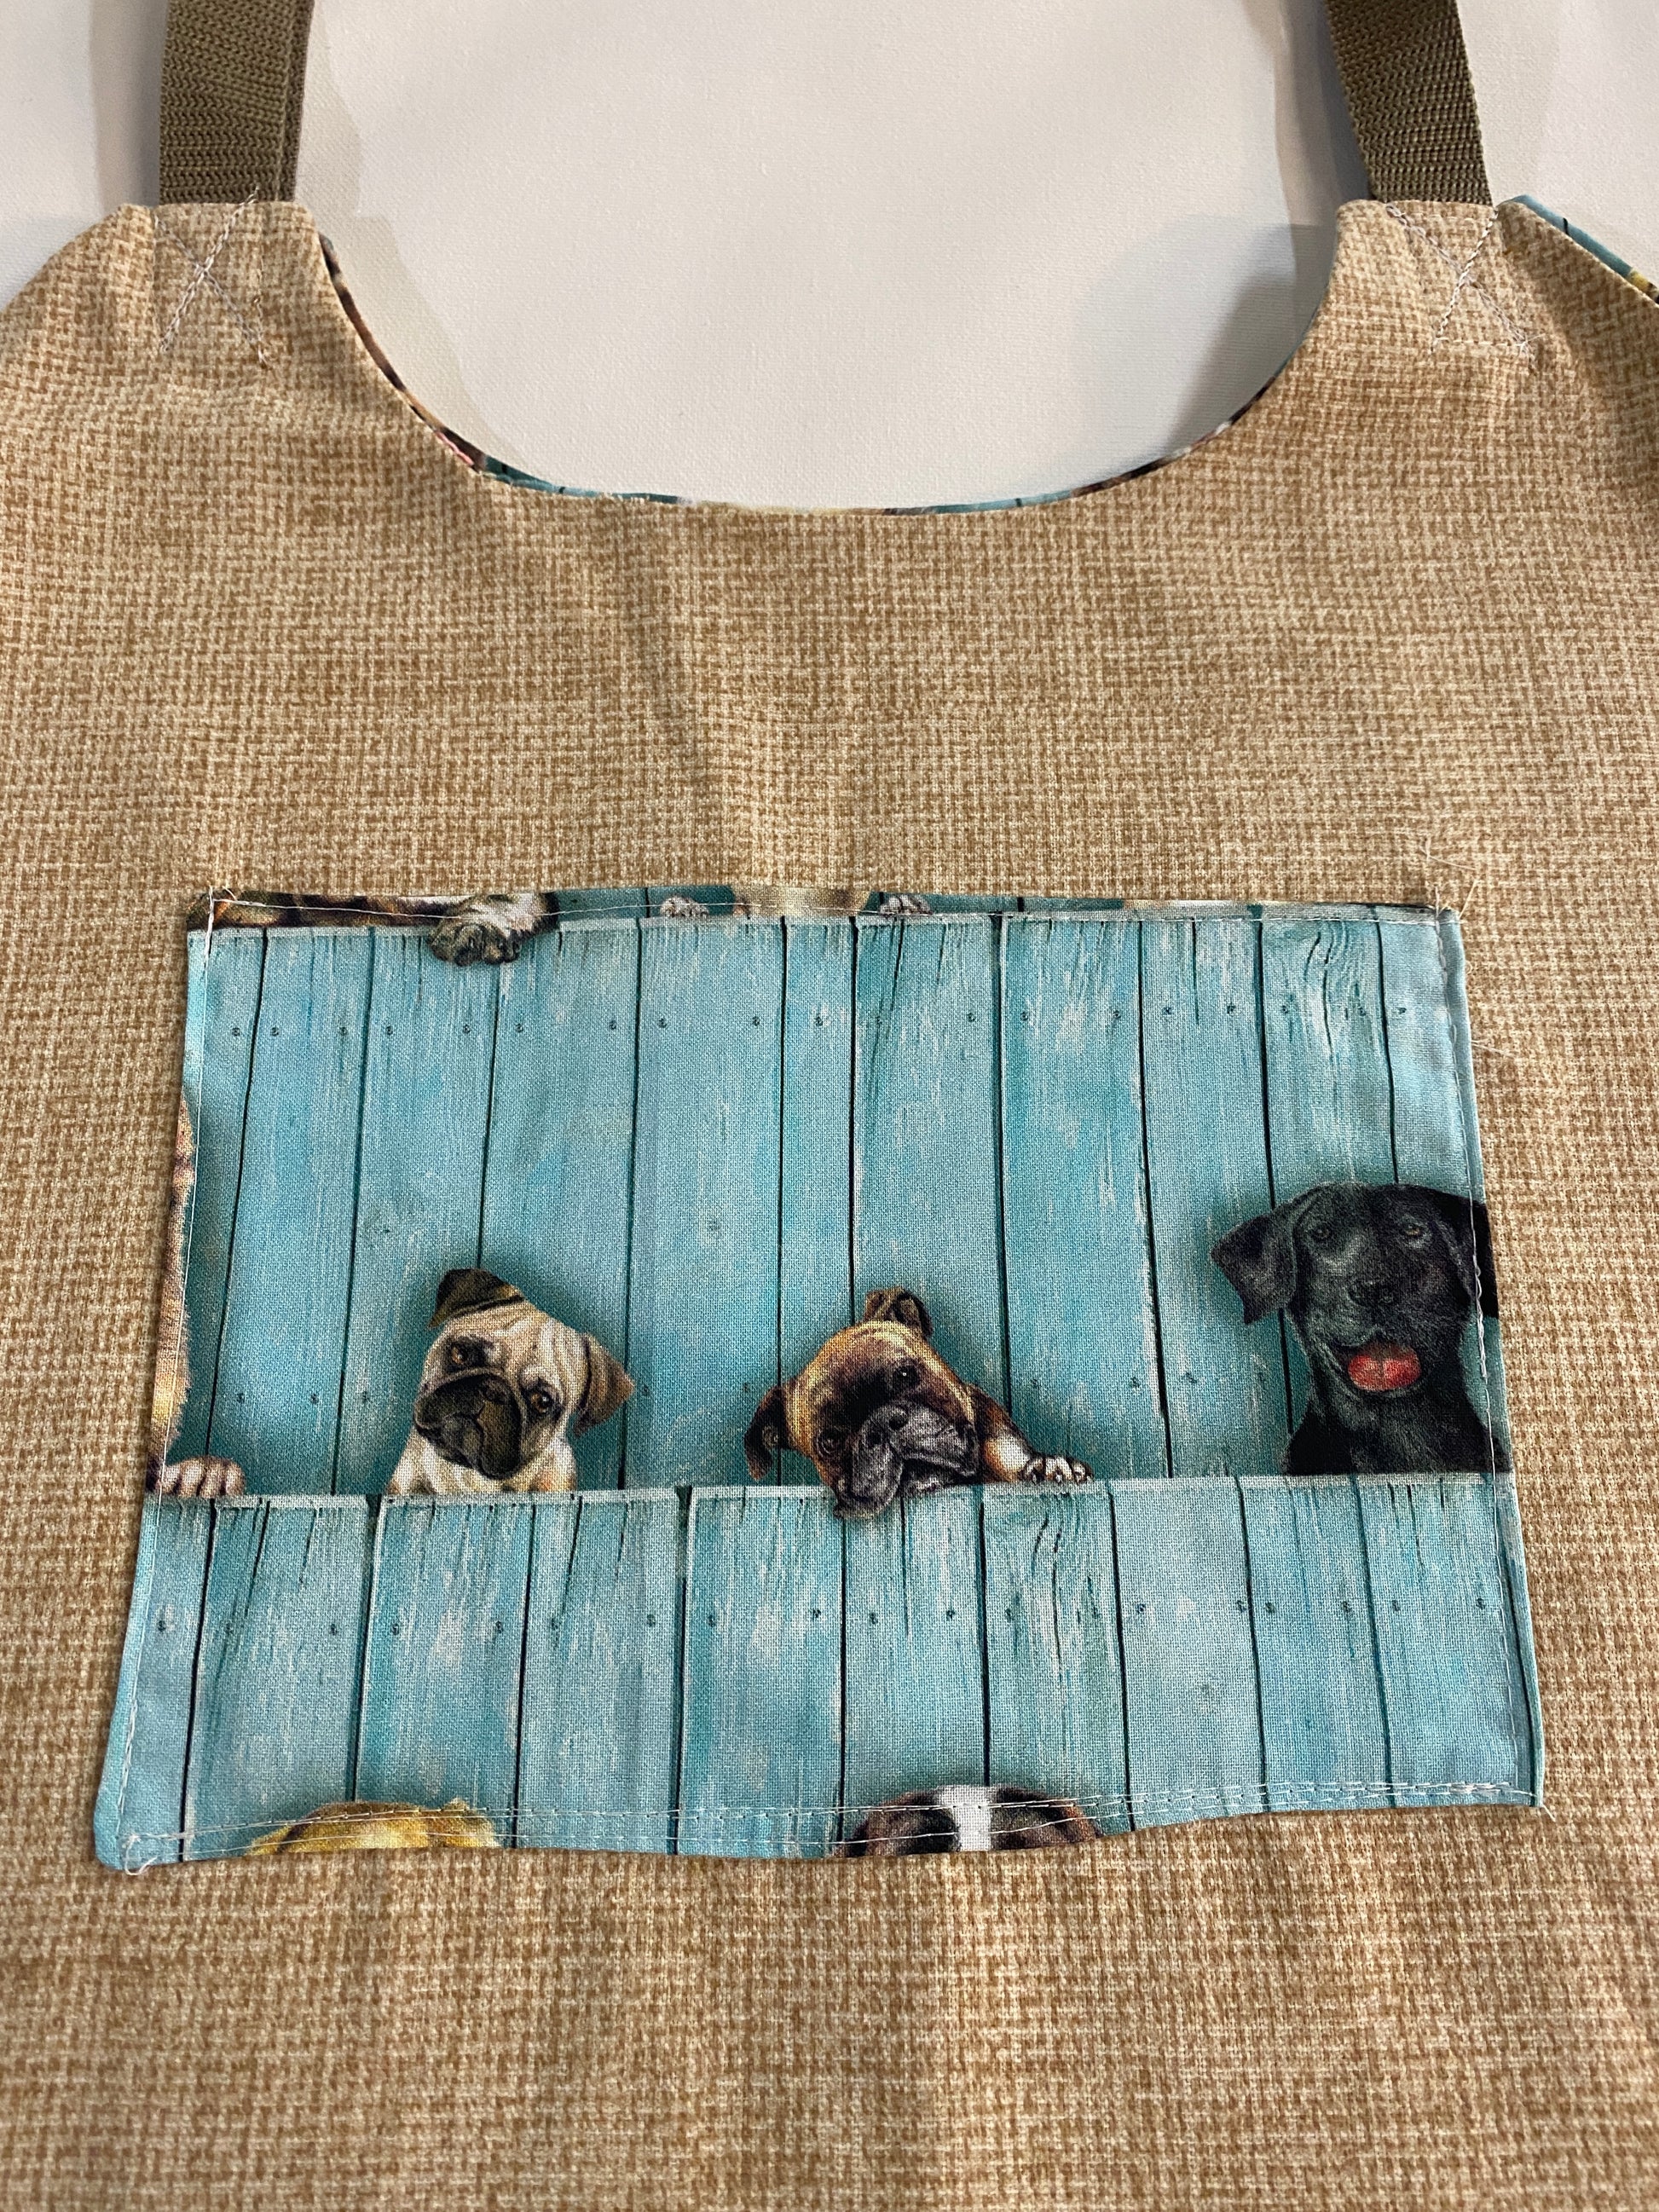 Dogs Market Bag - InRugCo Studio & Gift Shop